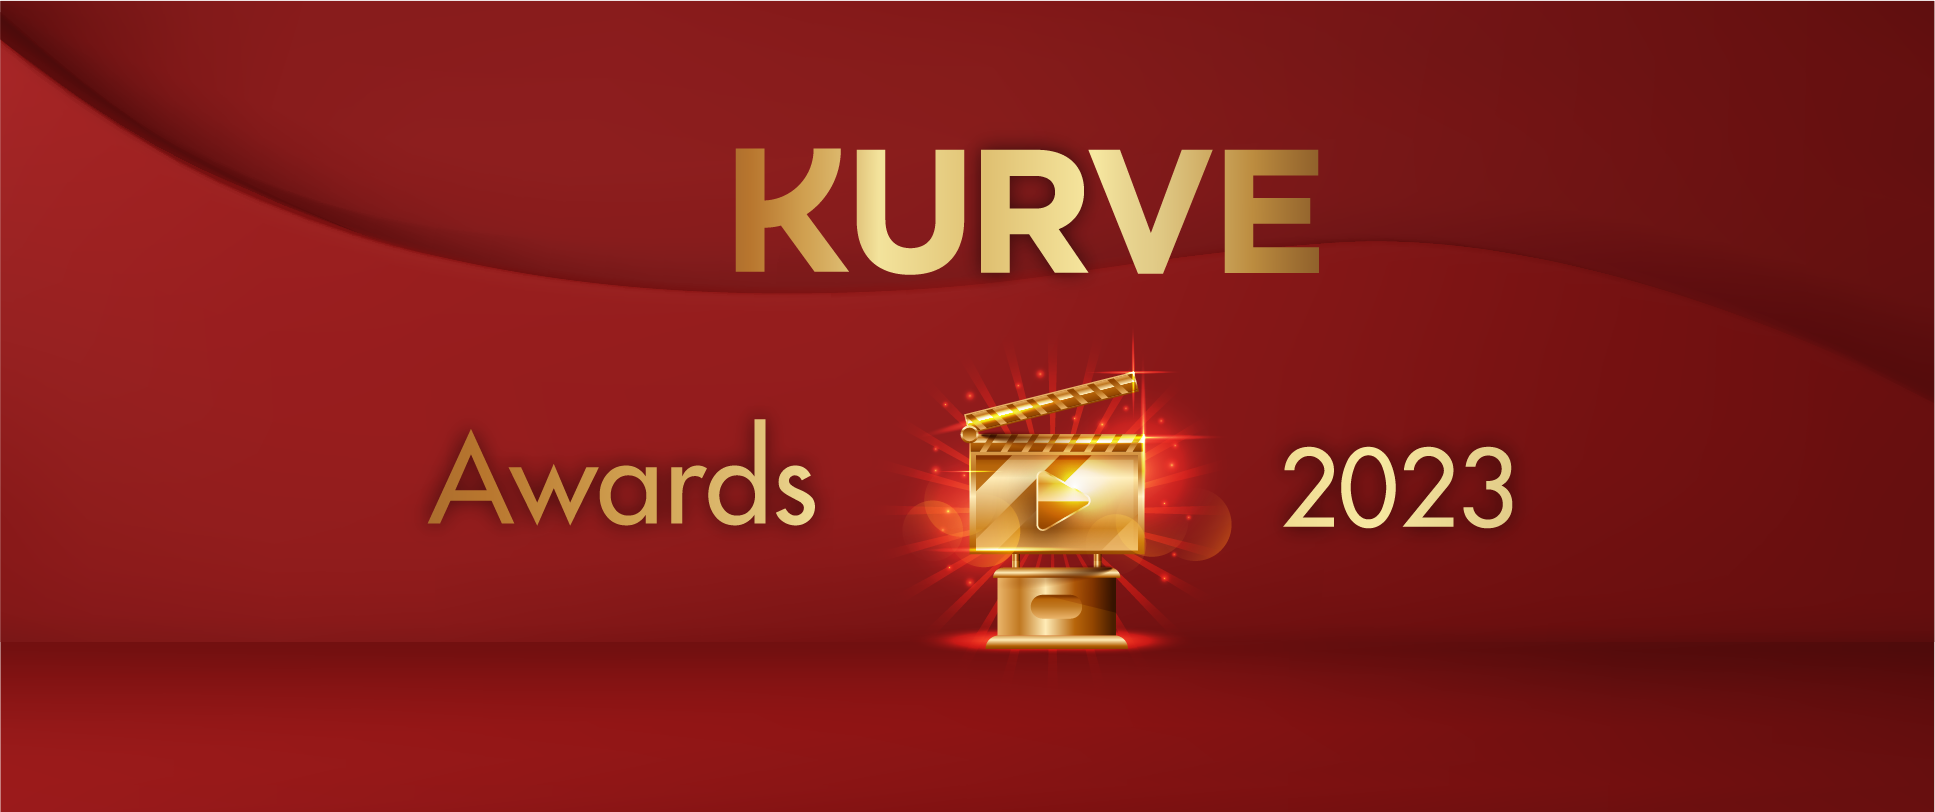 Kurve Awards 2023